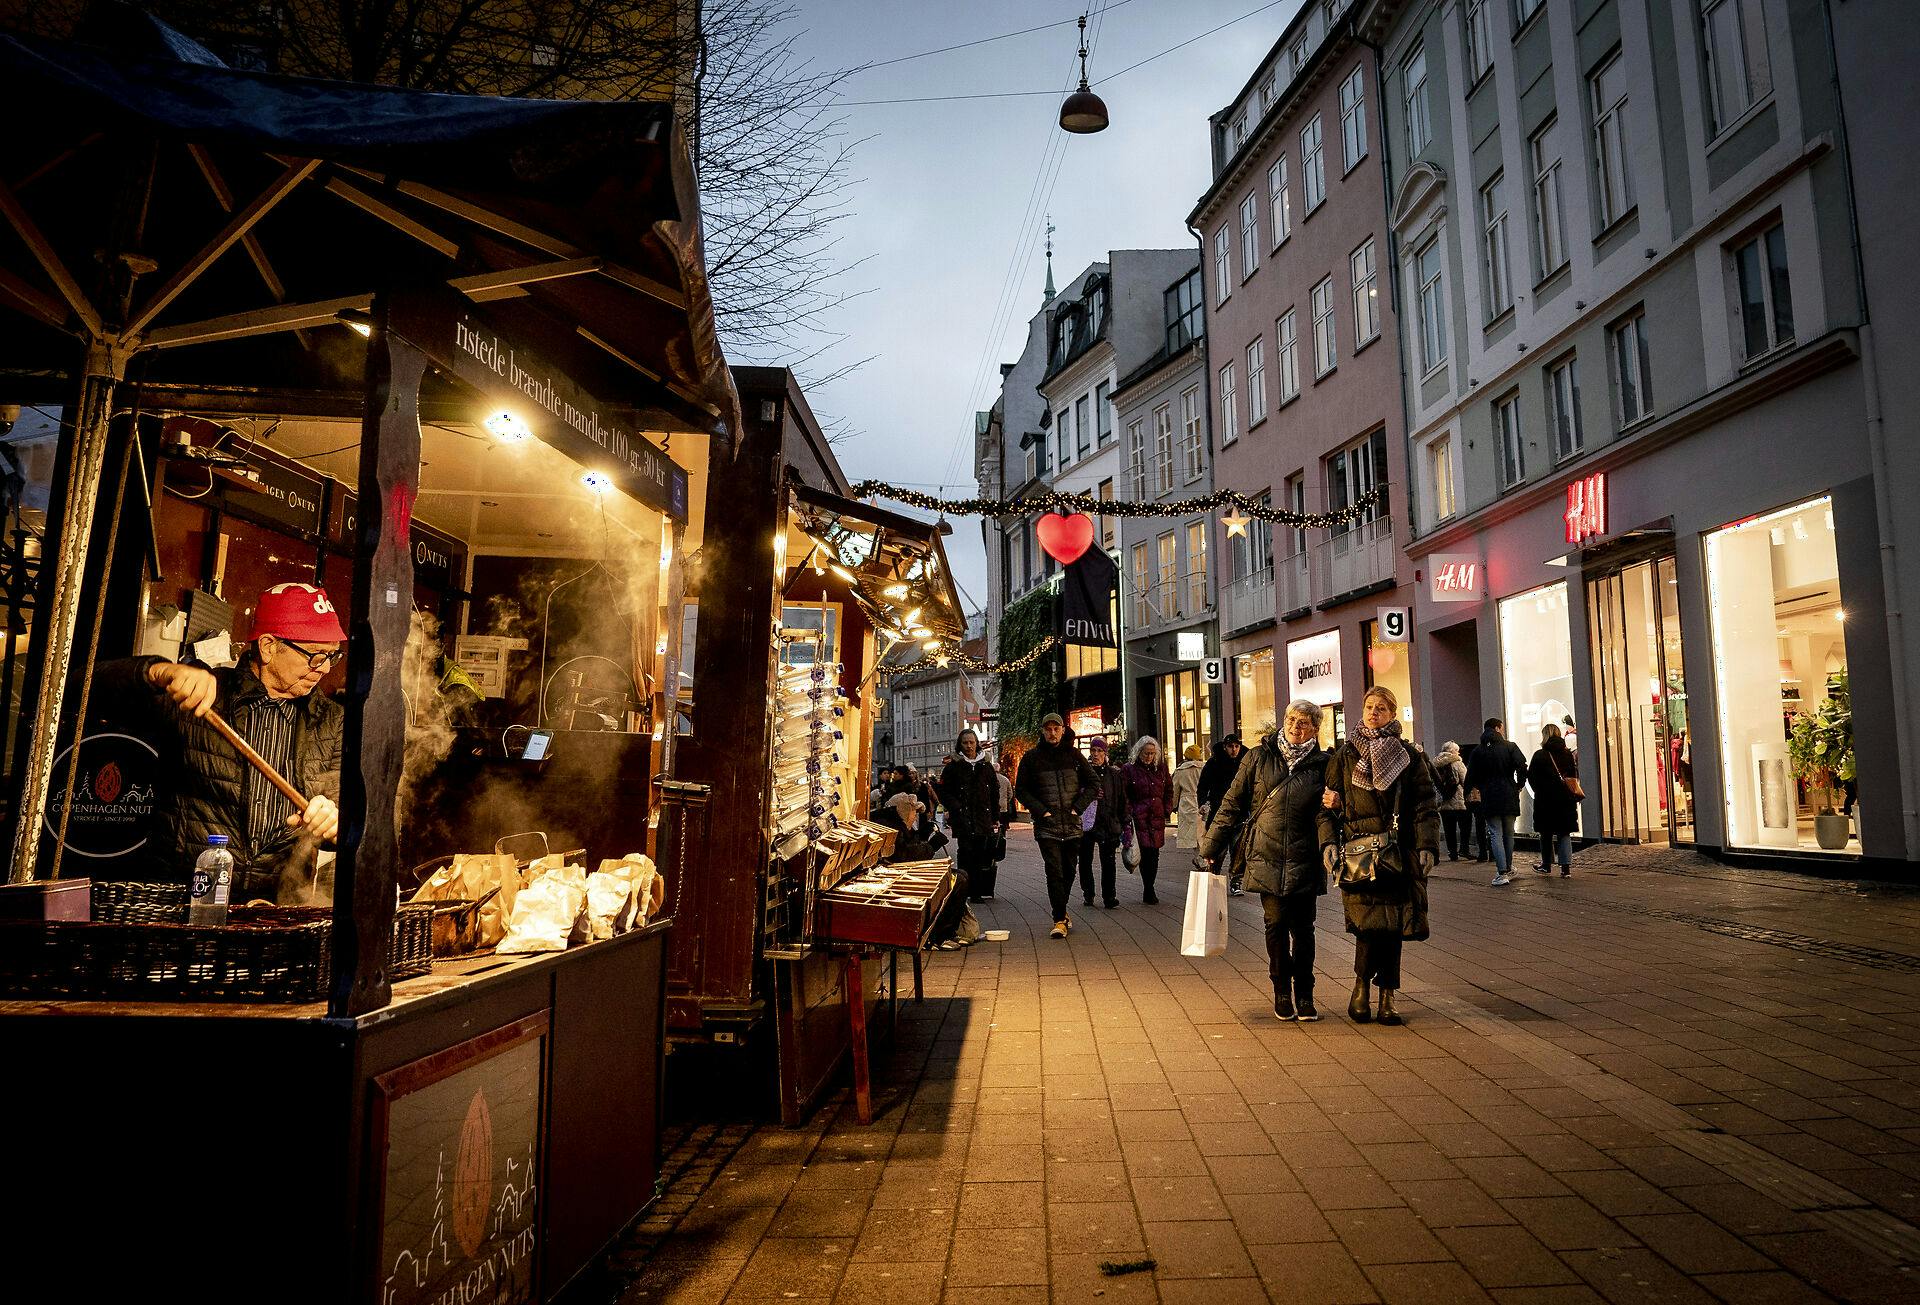 Julelysene i København vil være tændt mellem klokken 15.00 og 21.00. Det bliver tændt på et senere tidspunkt end tidligere og i kortere tid for at spare energi.